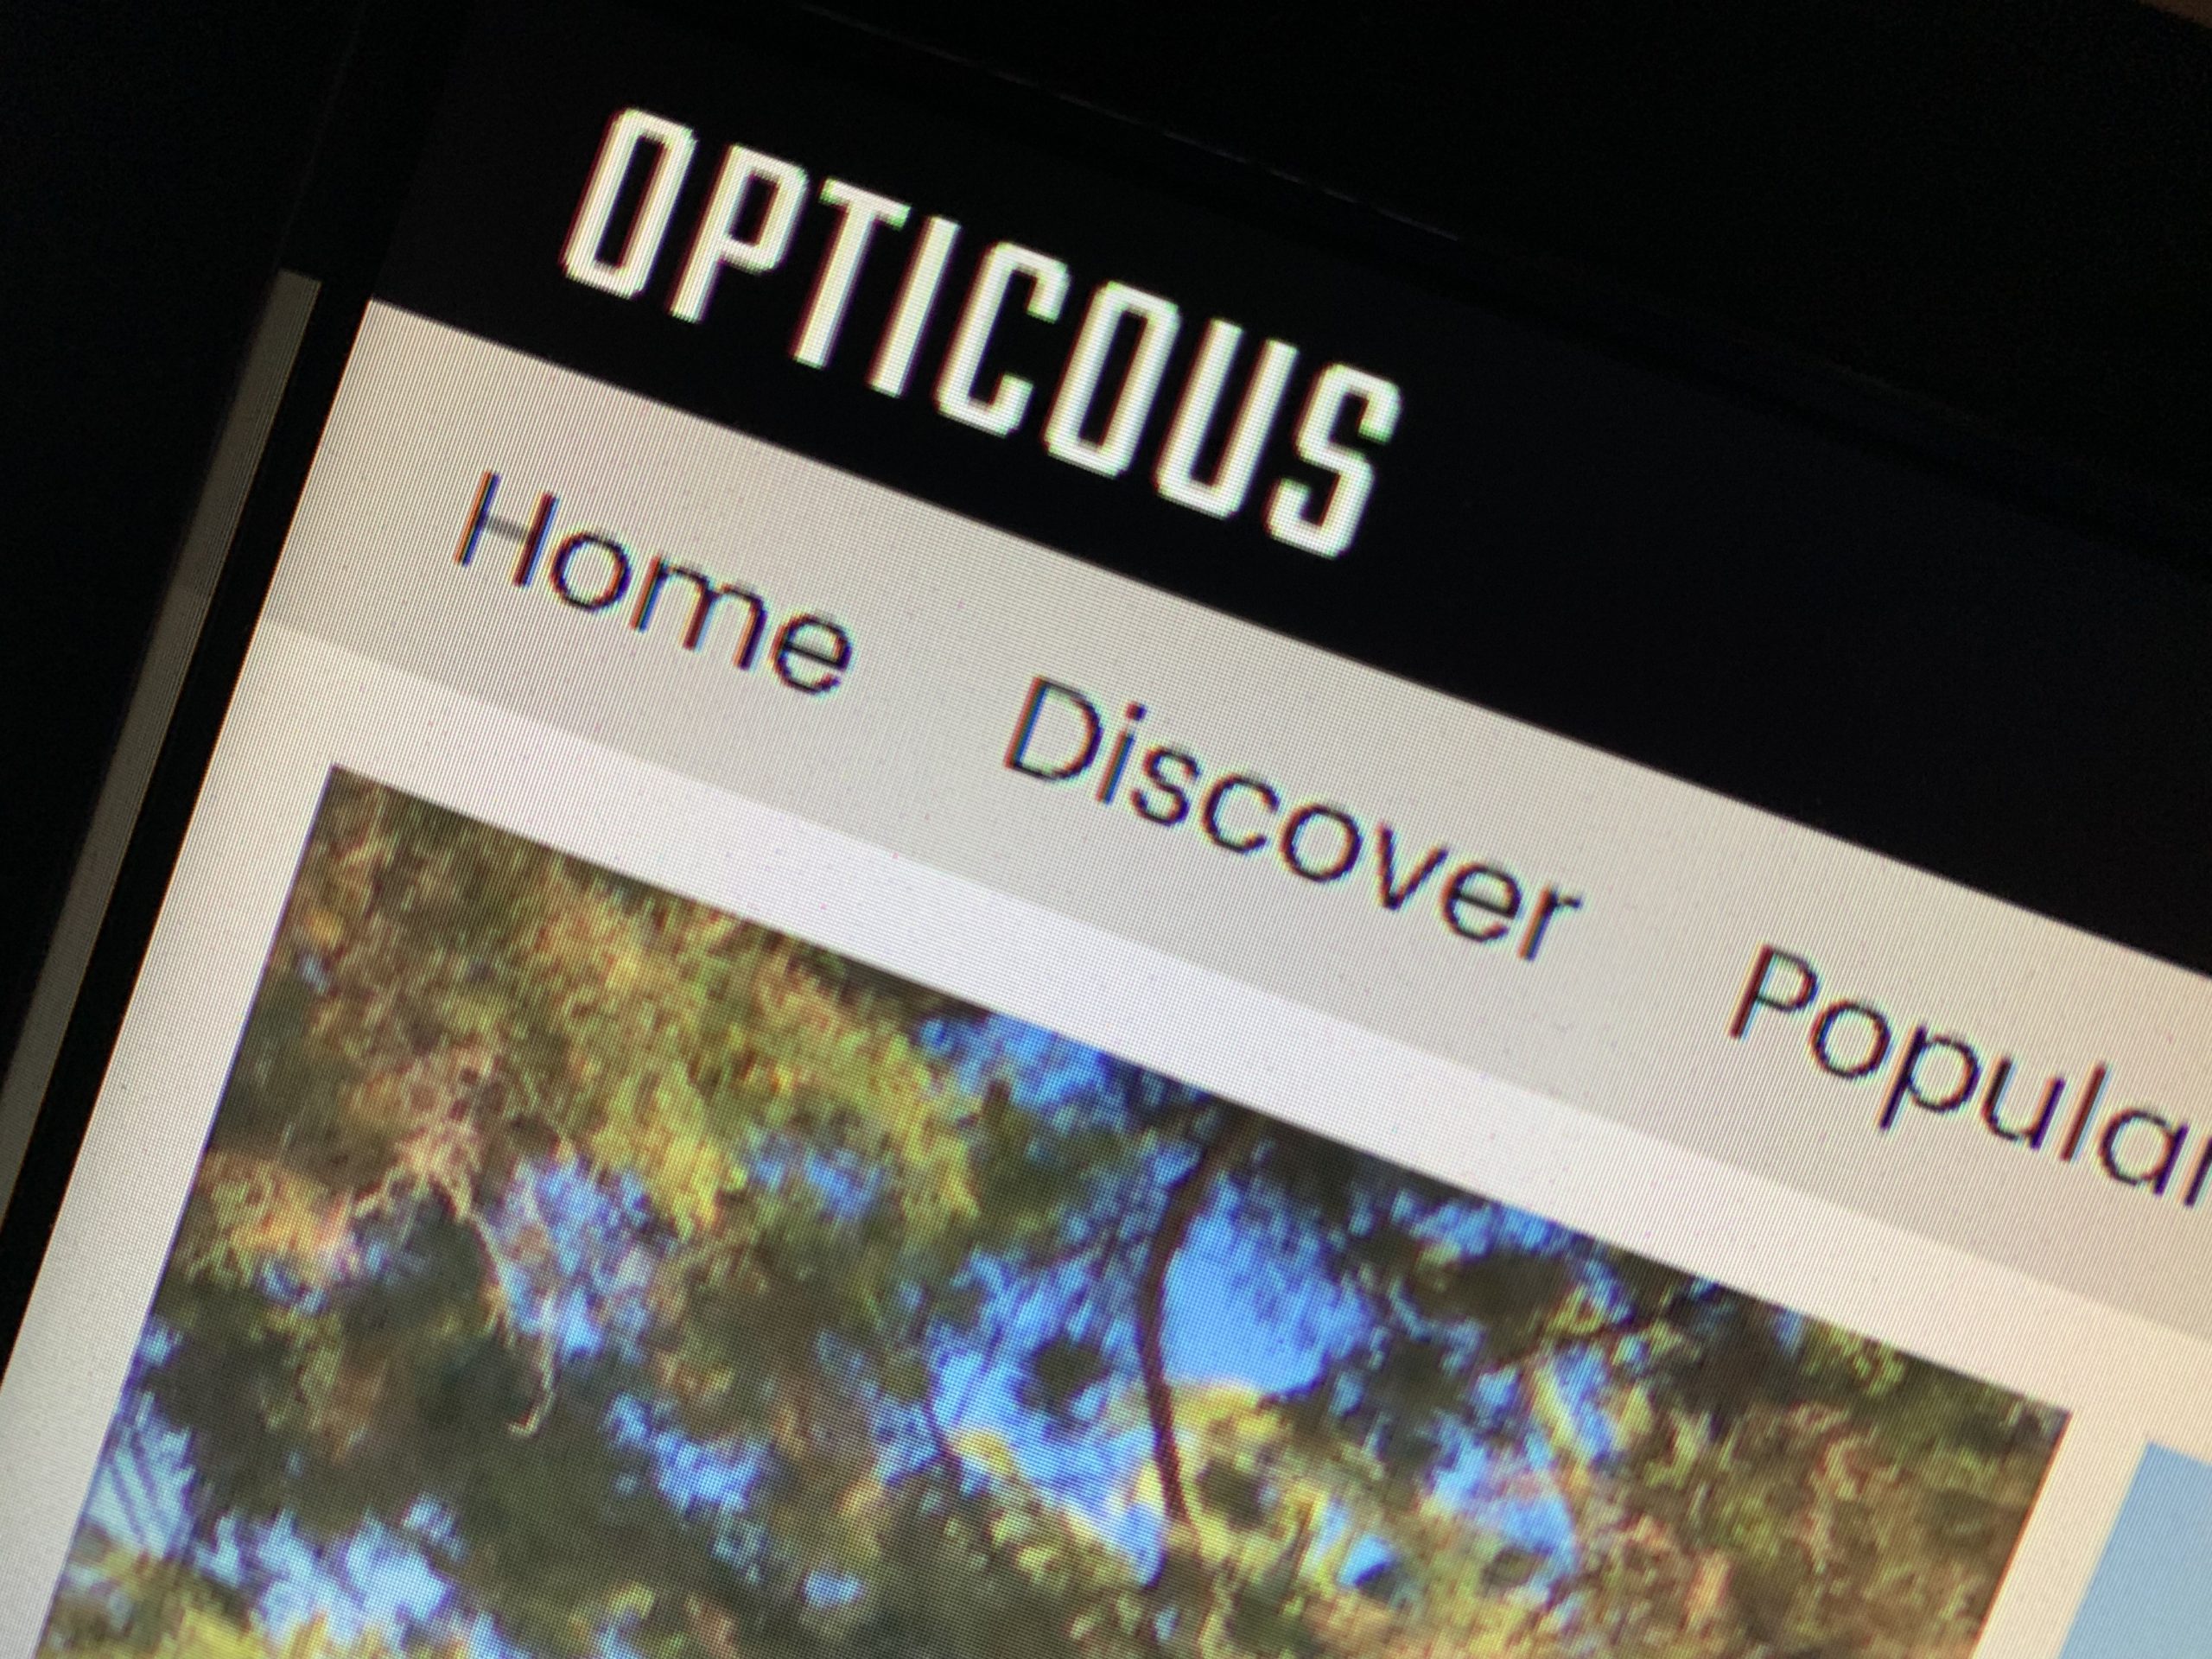 Opticous.com – The Launch Of A Dream Come True